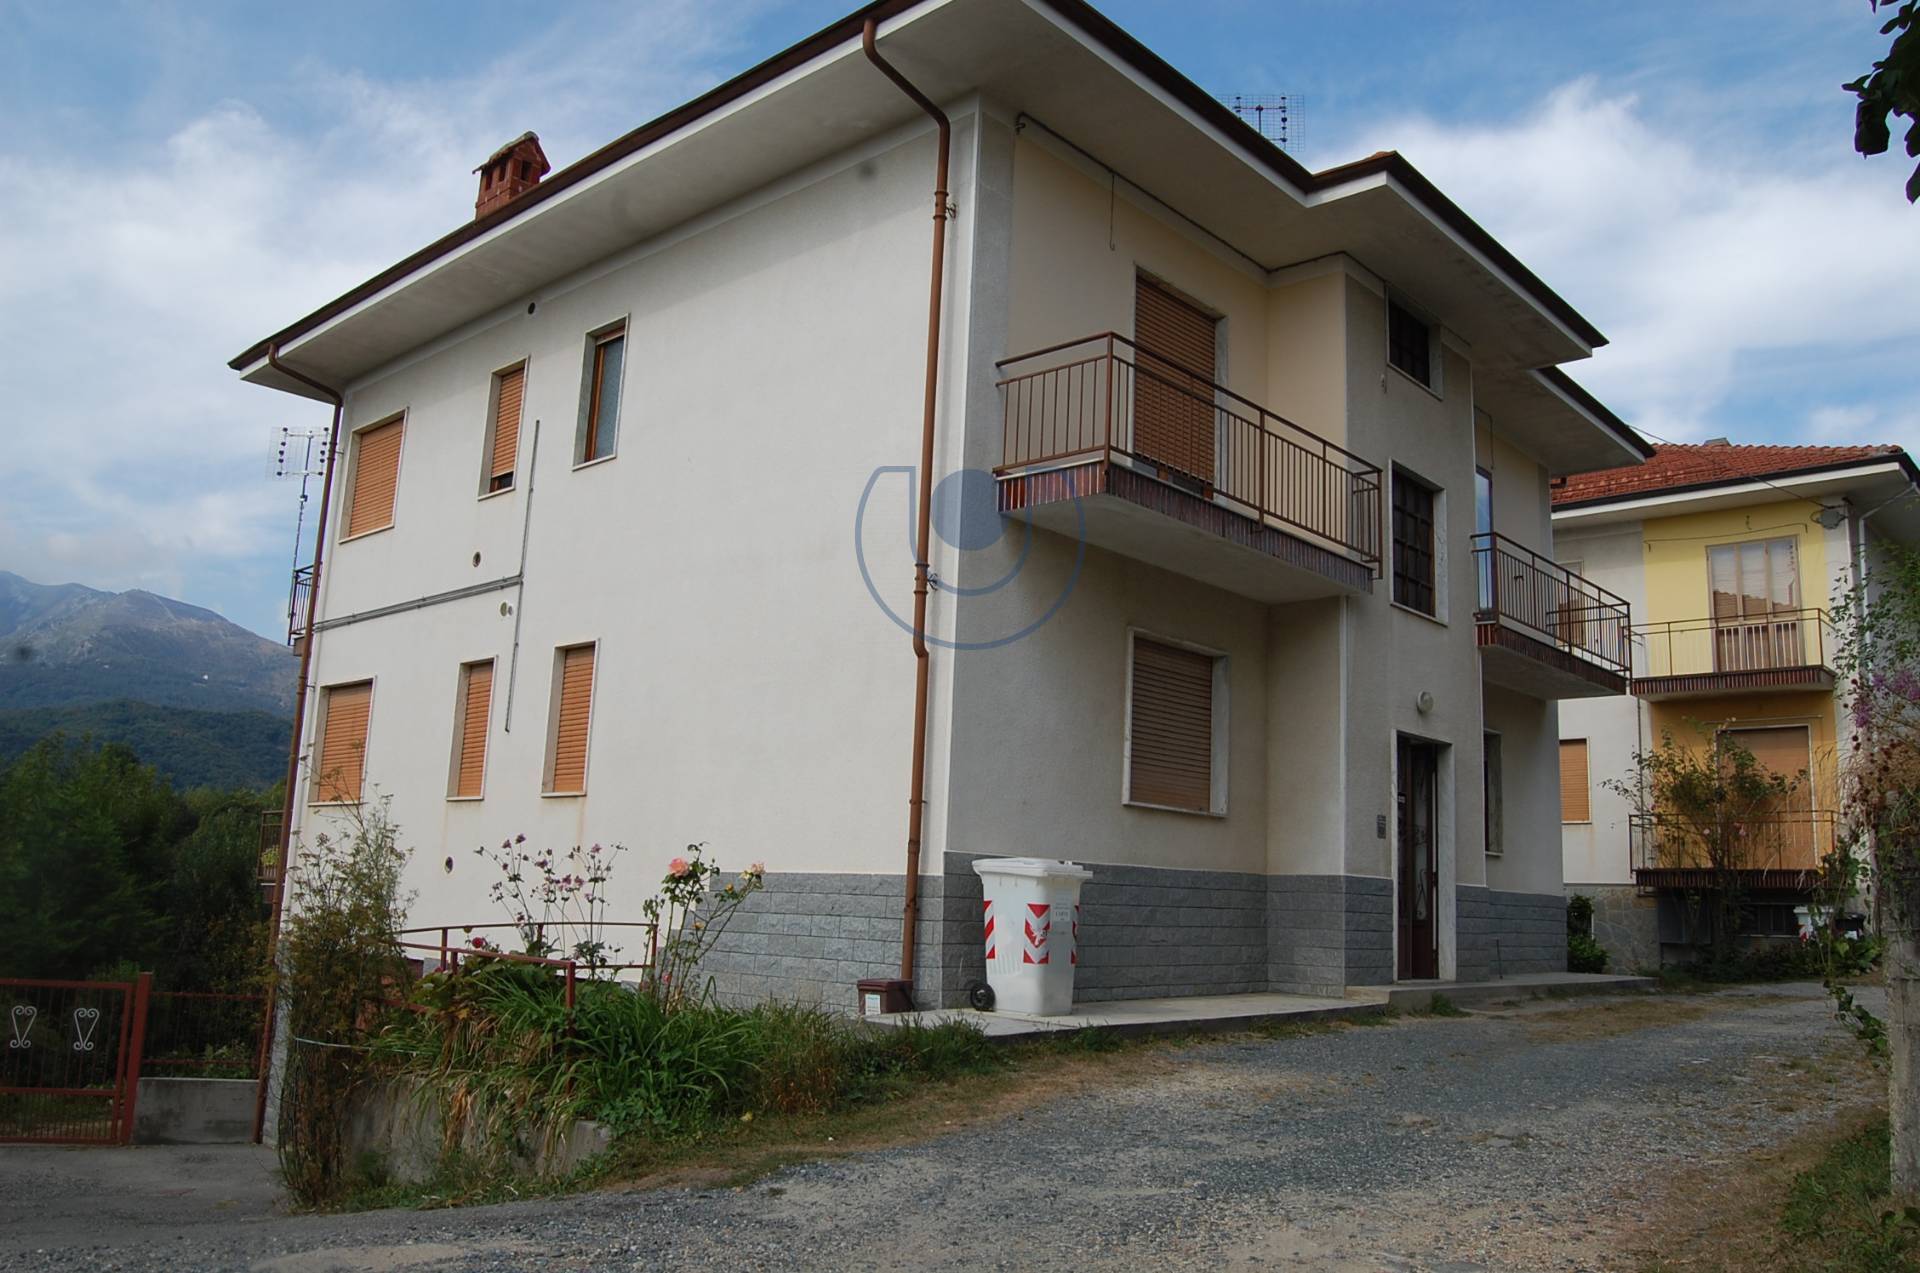 Appartamento in affitto Torino